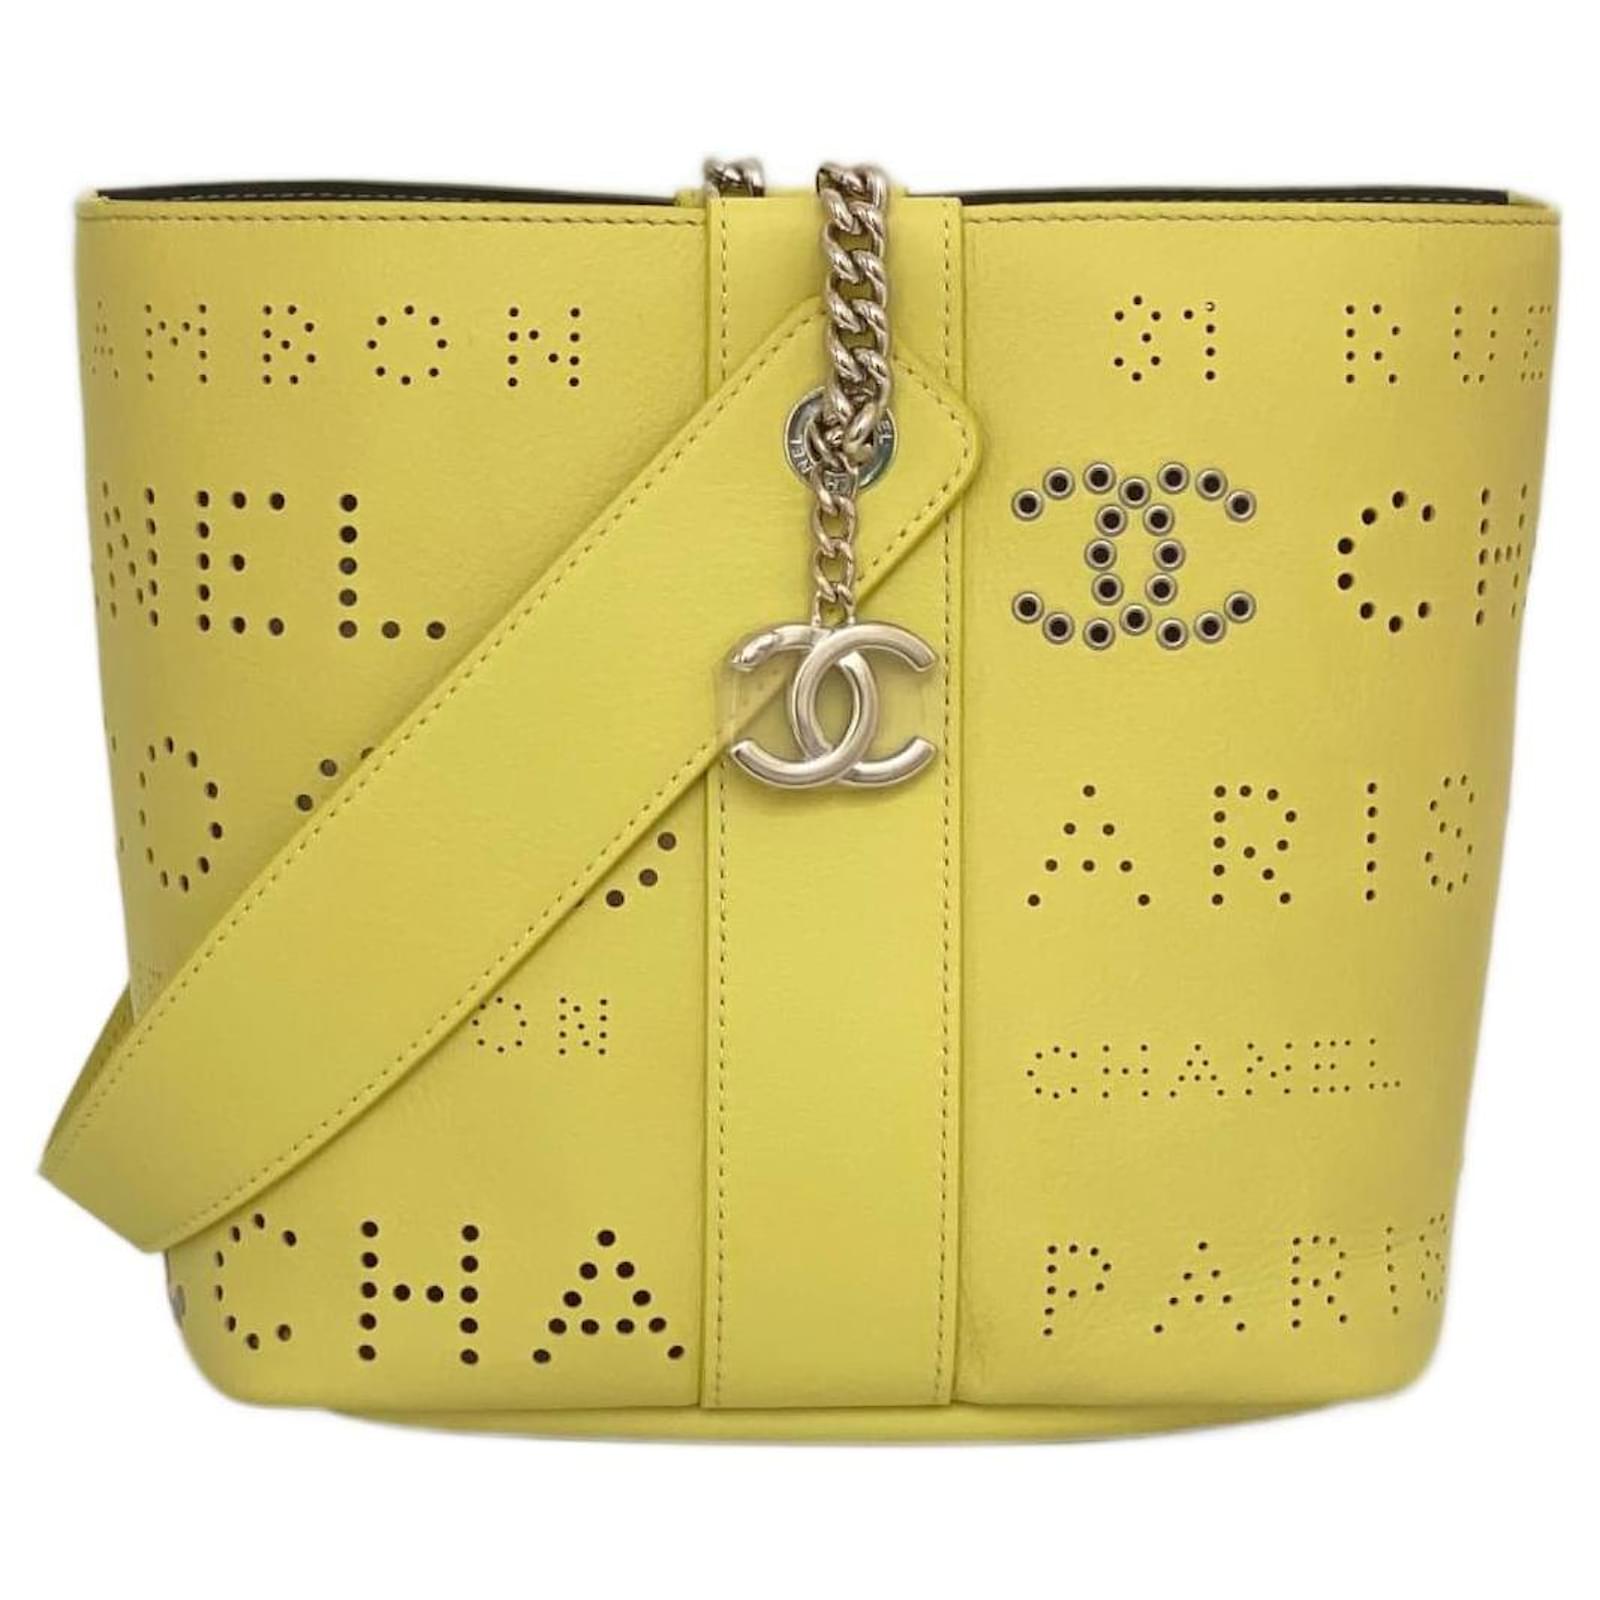 Chanel bucket bag